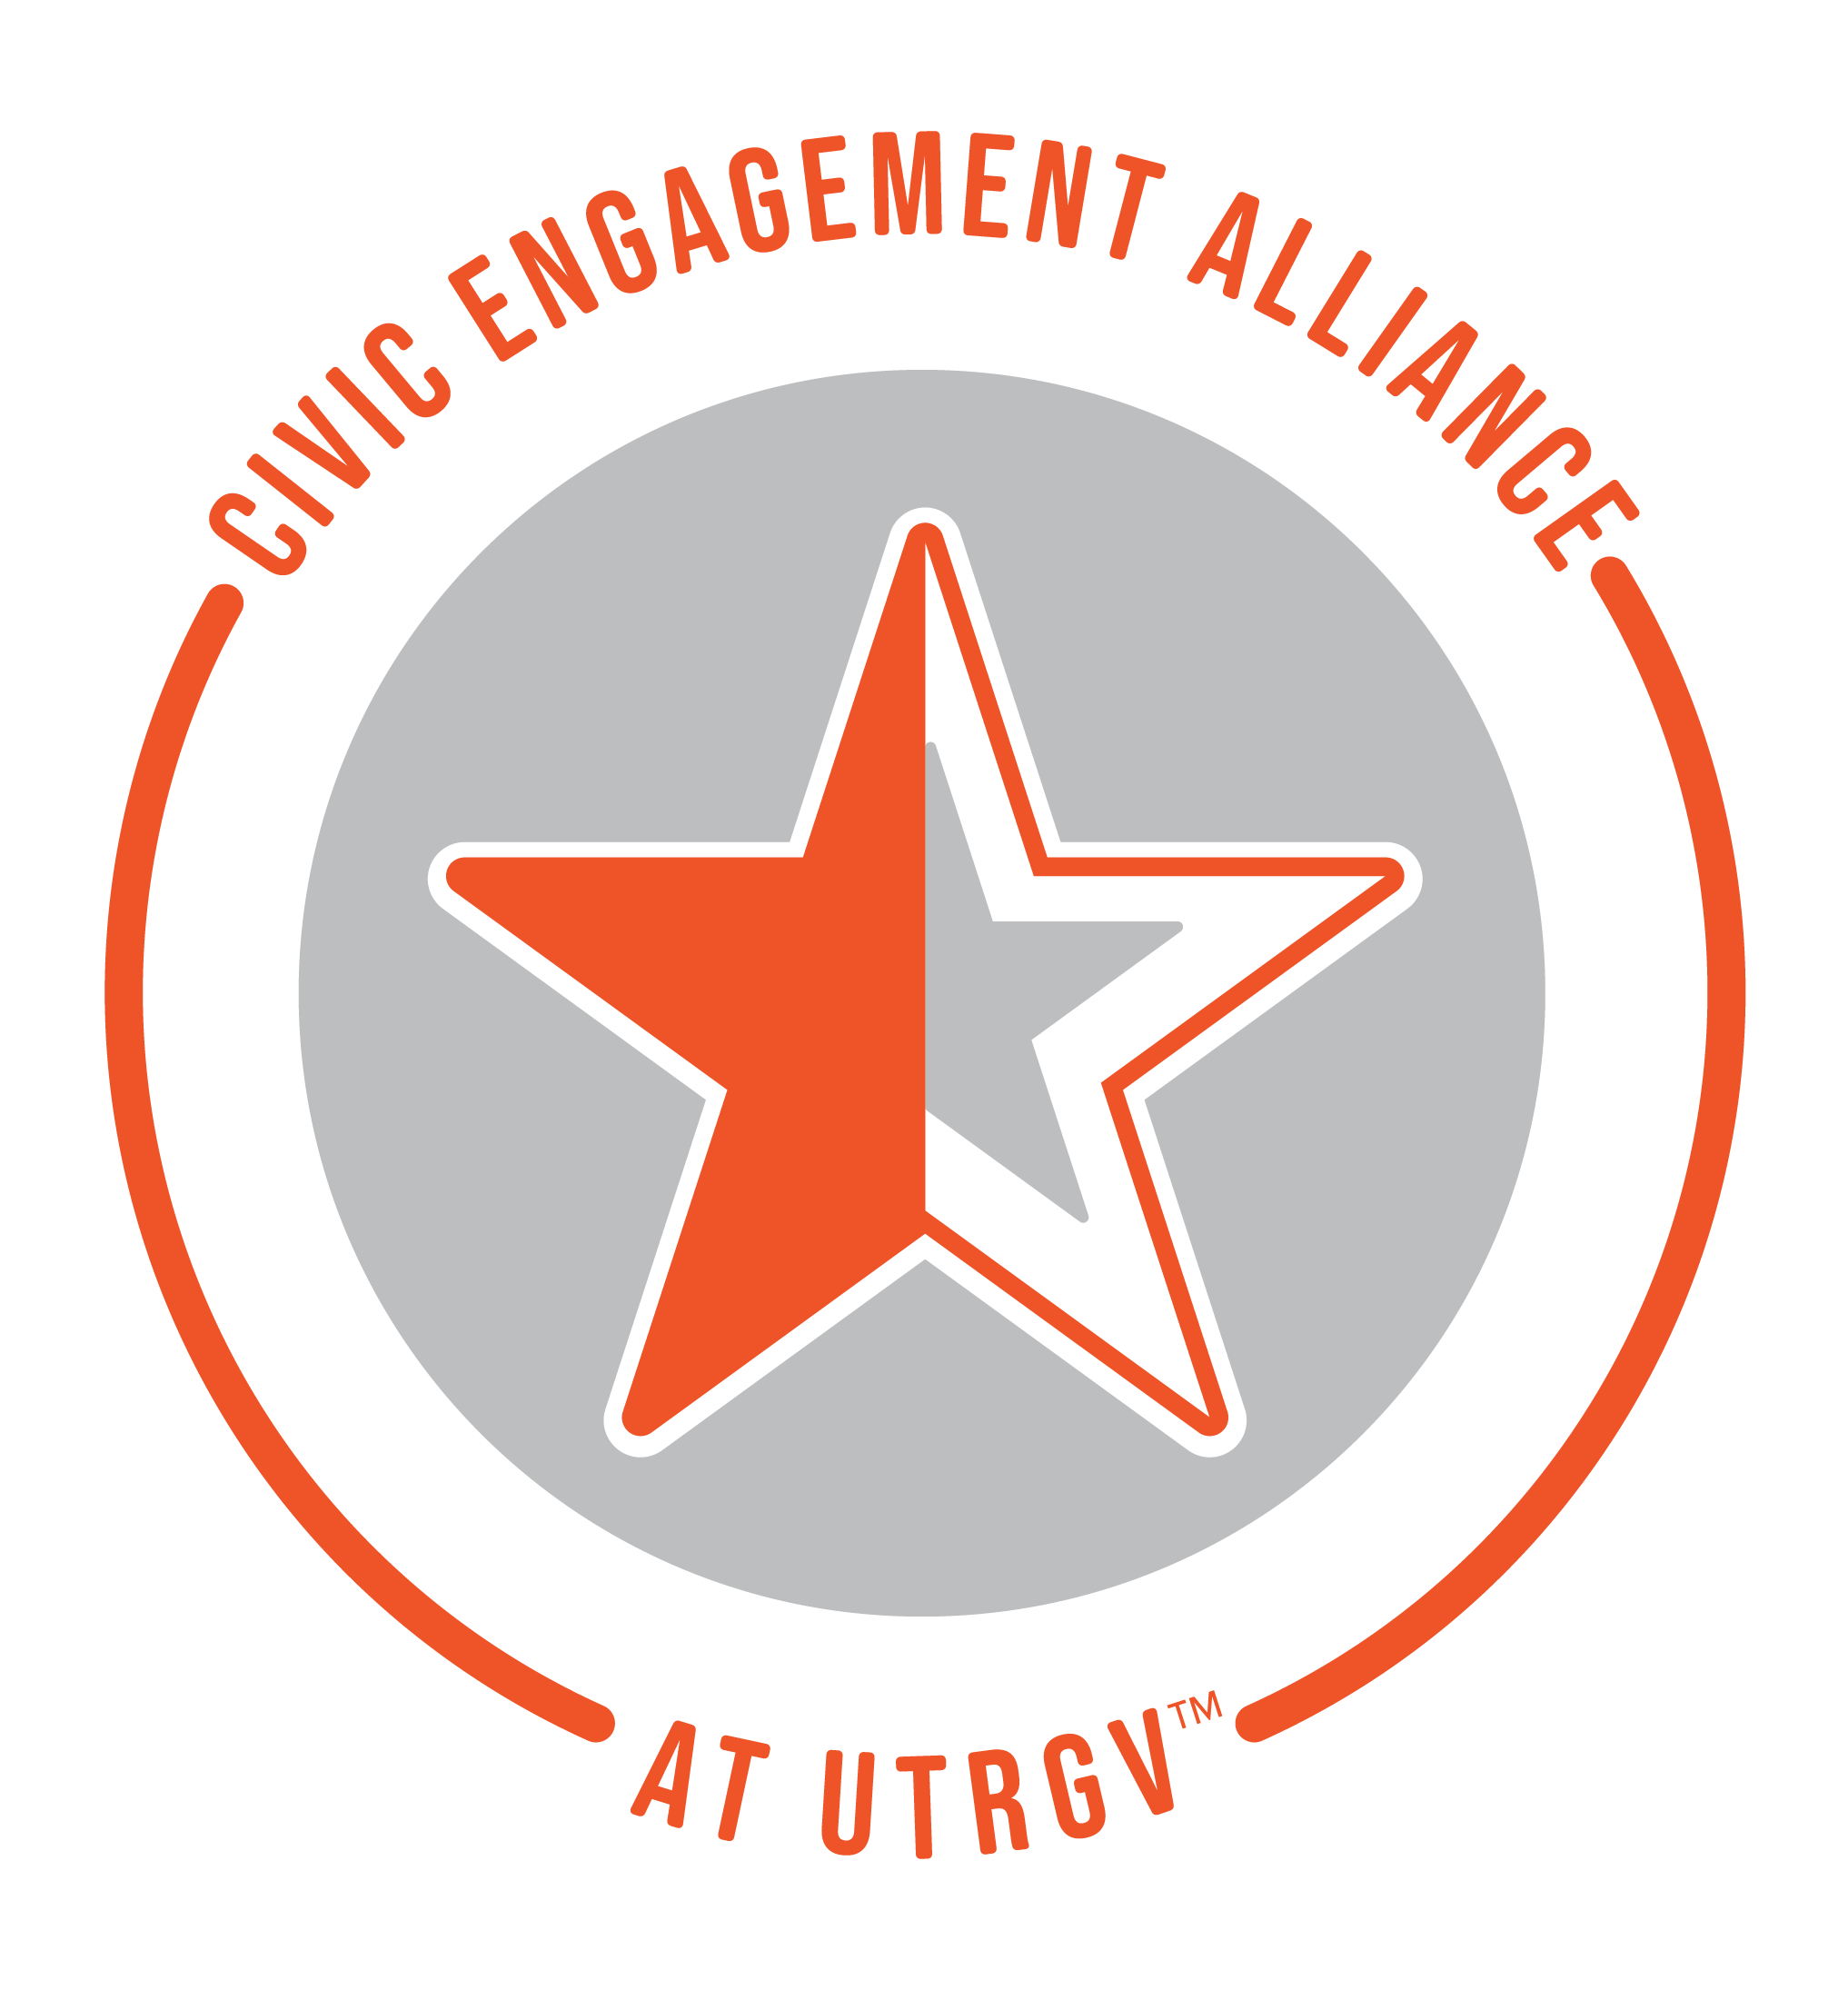 Civic Engagement Alliance logo